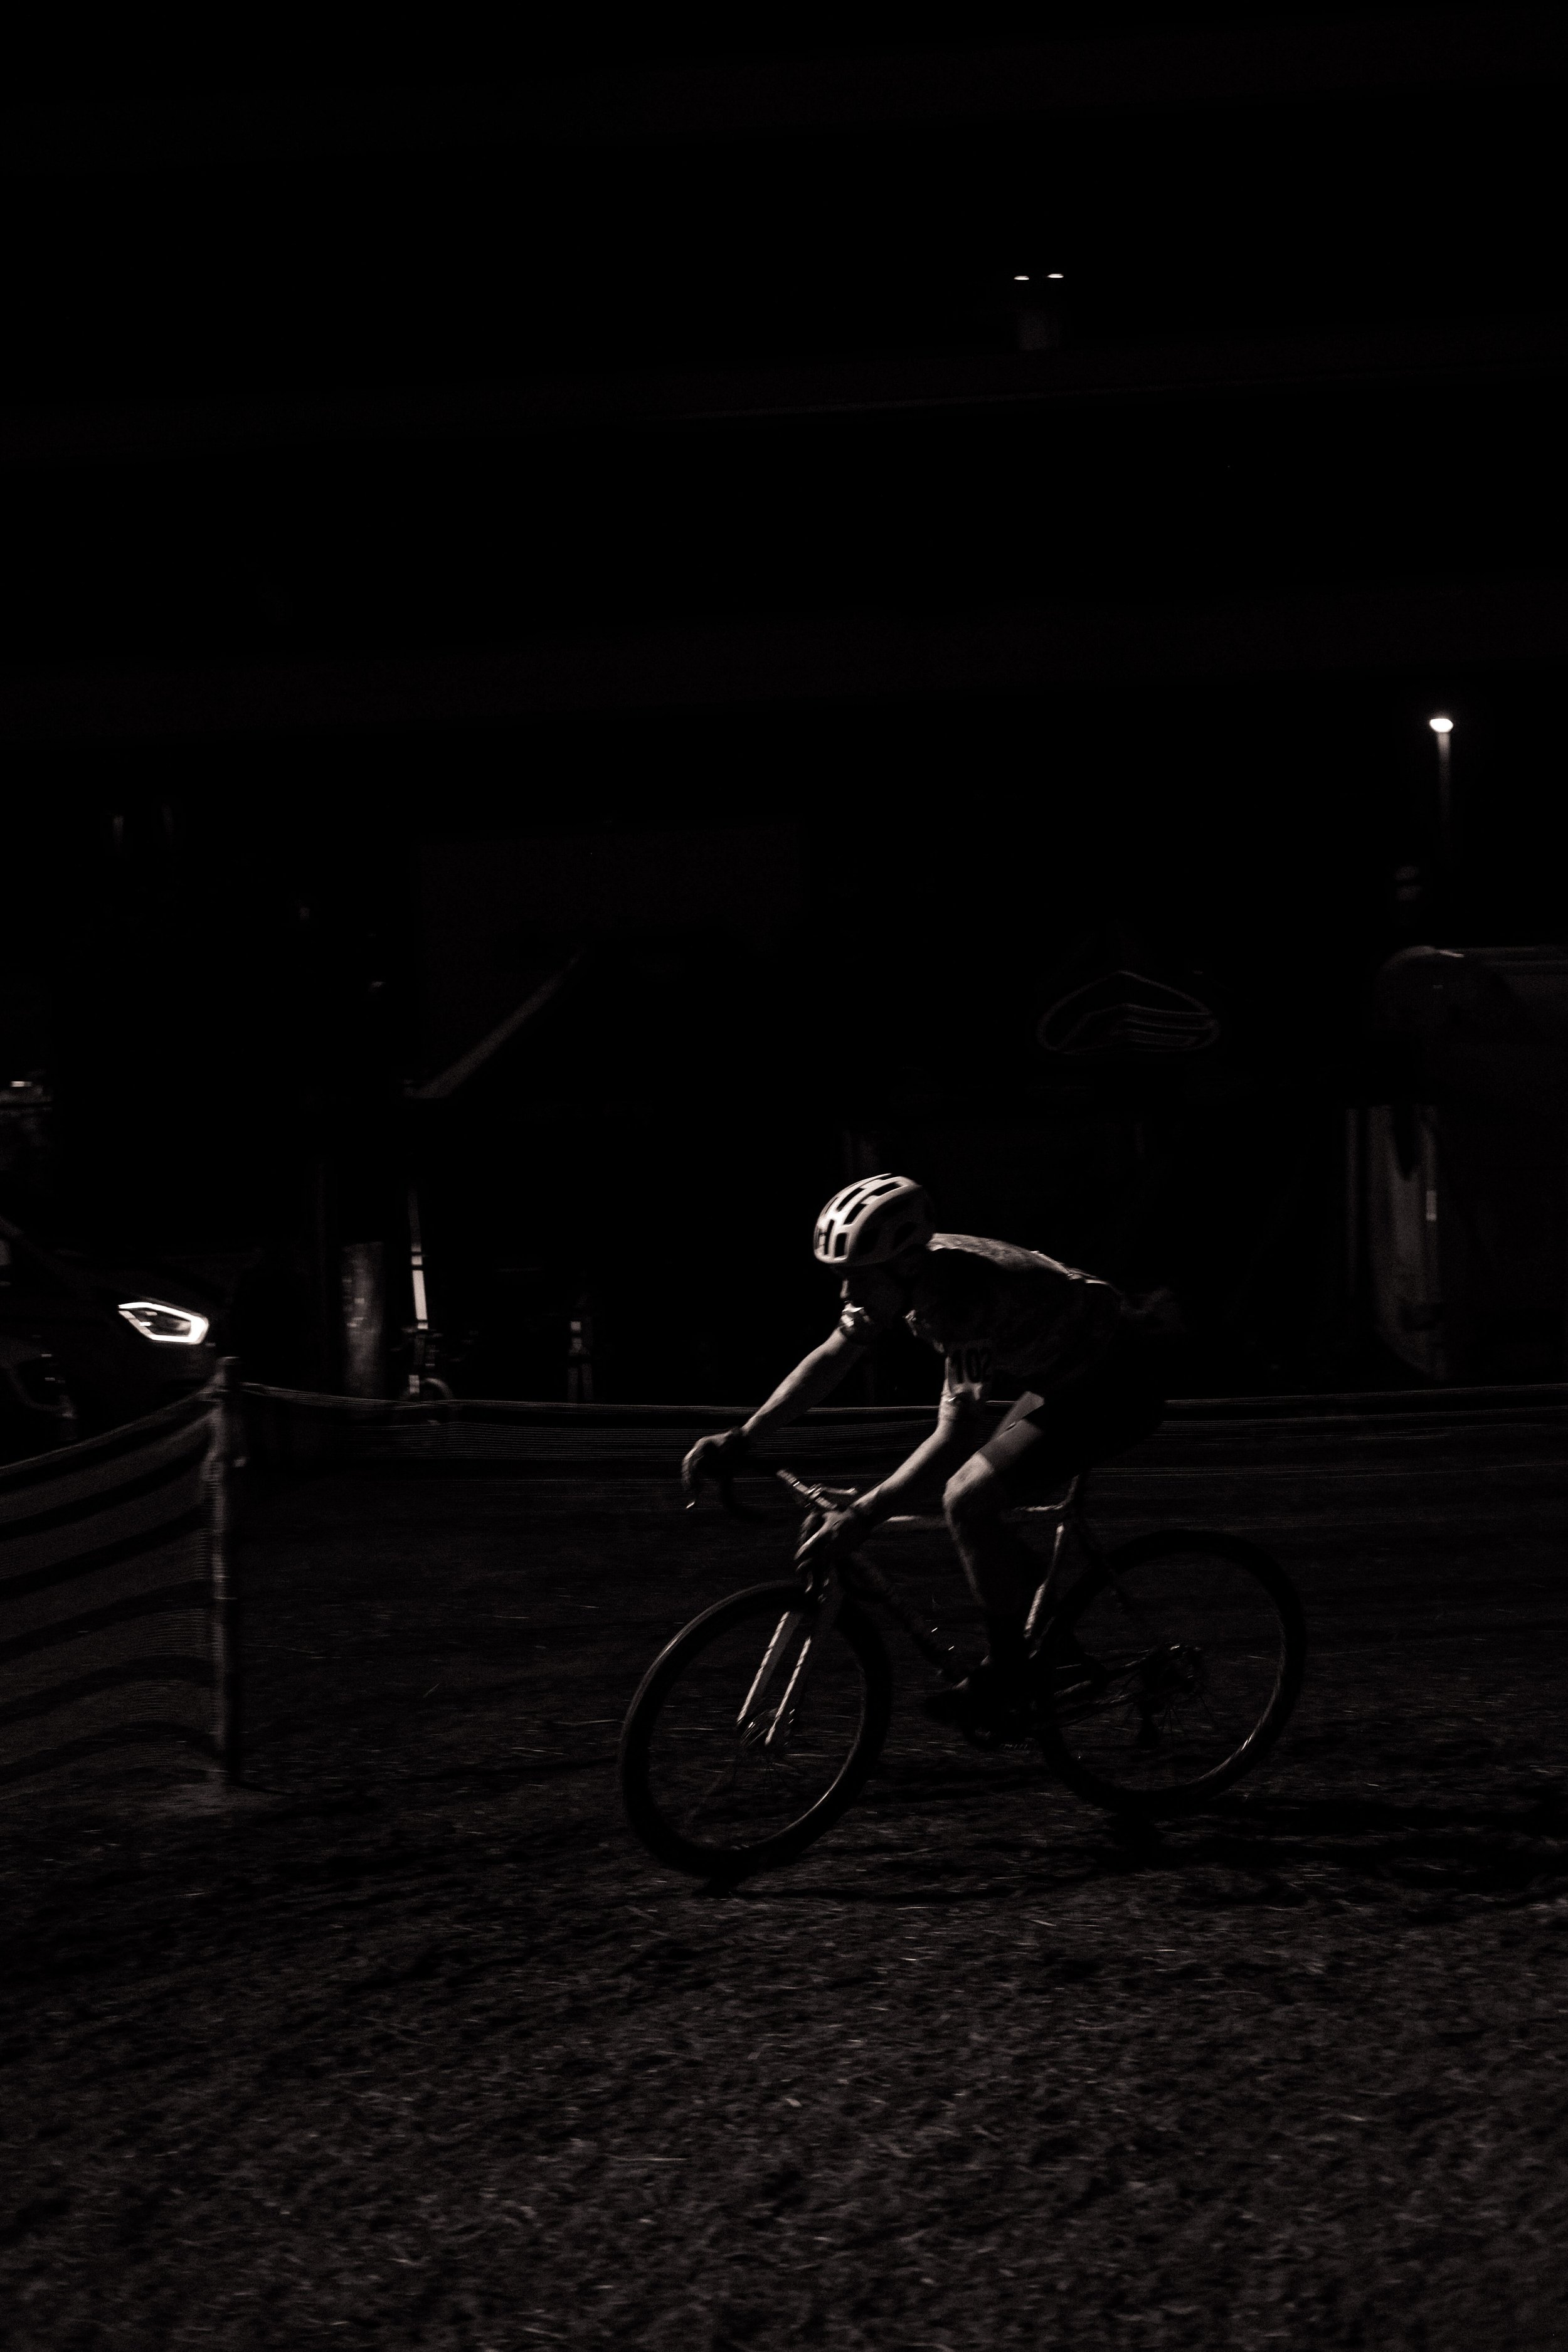 darkcross 21 turocycling-54.jpg